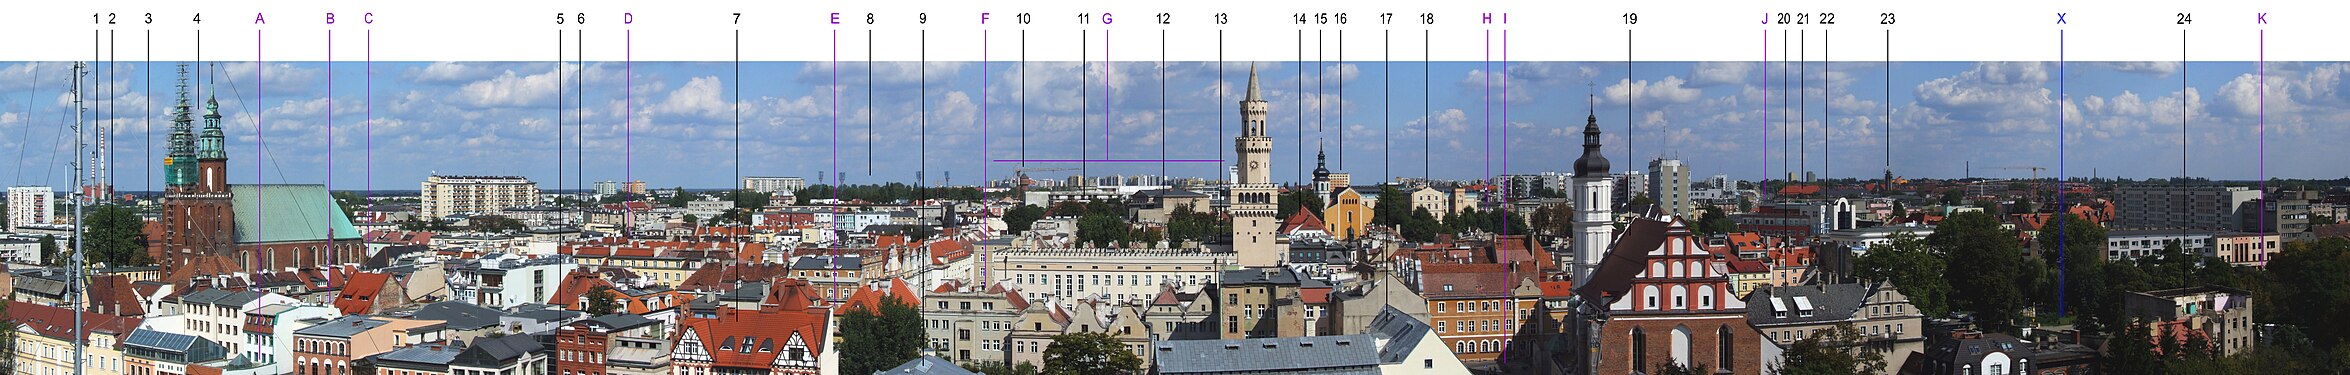 Panorama d'Opole depuis la Tour Piast